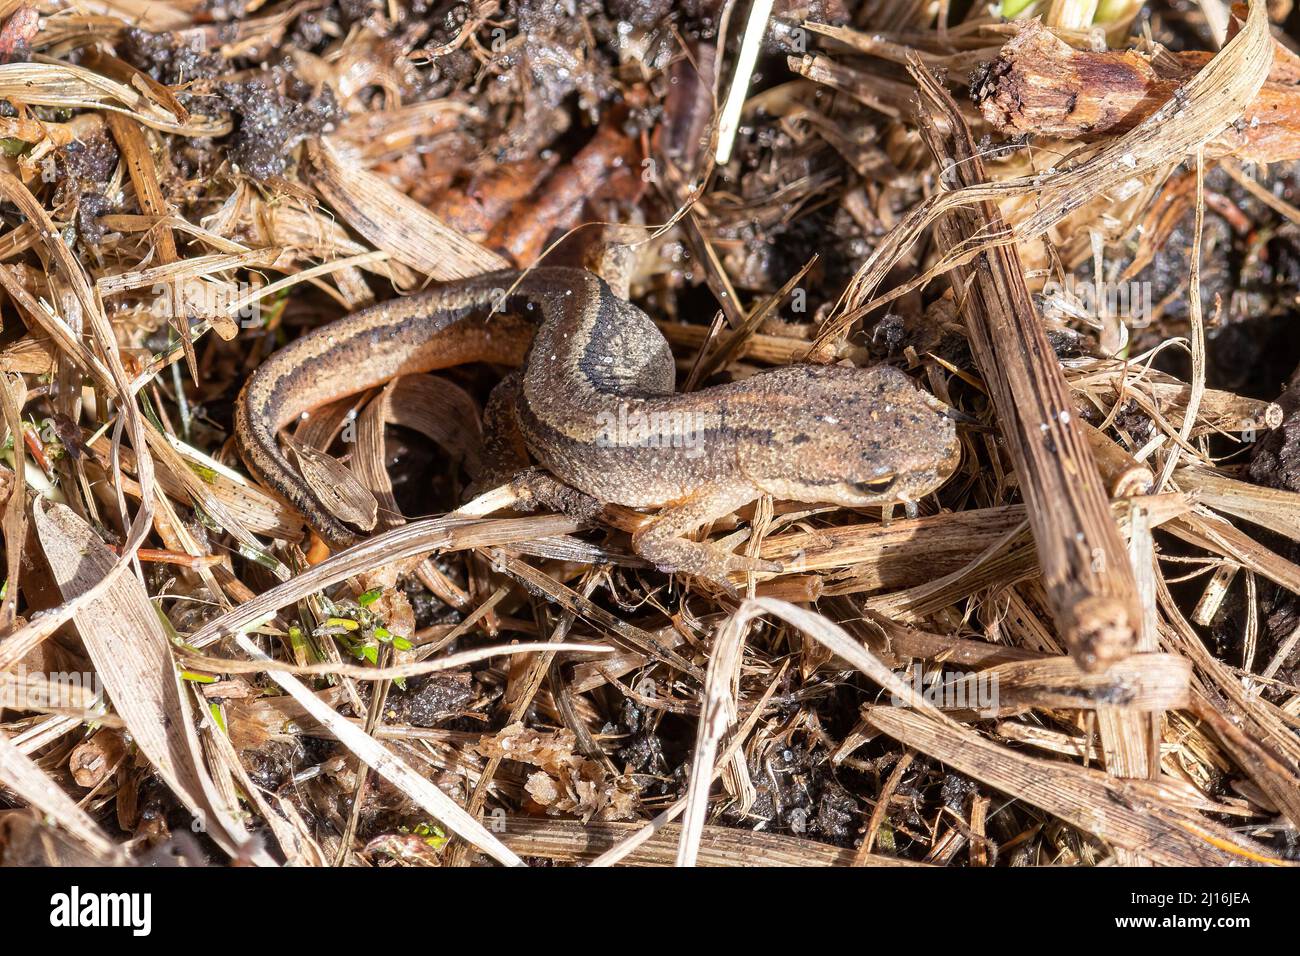 Palmate newt (Lissotriton helveticus), anfibio in fase terrestre trovato sotto un ceppo umido, Regno Unito, durante marzo Foto Stock